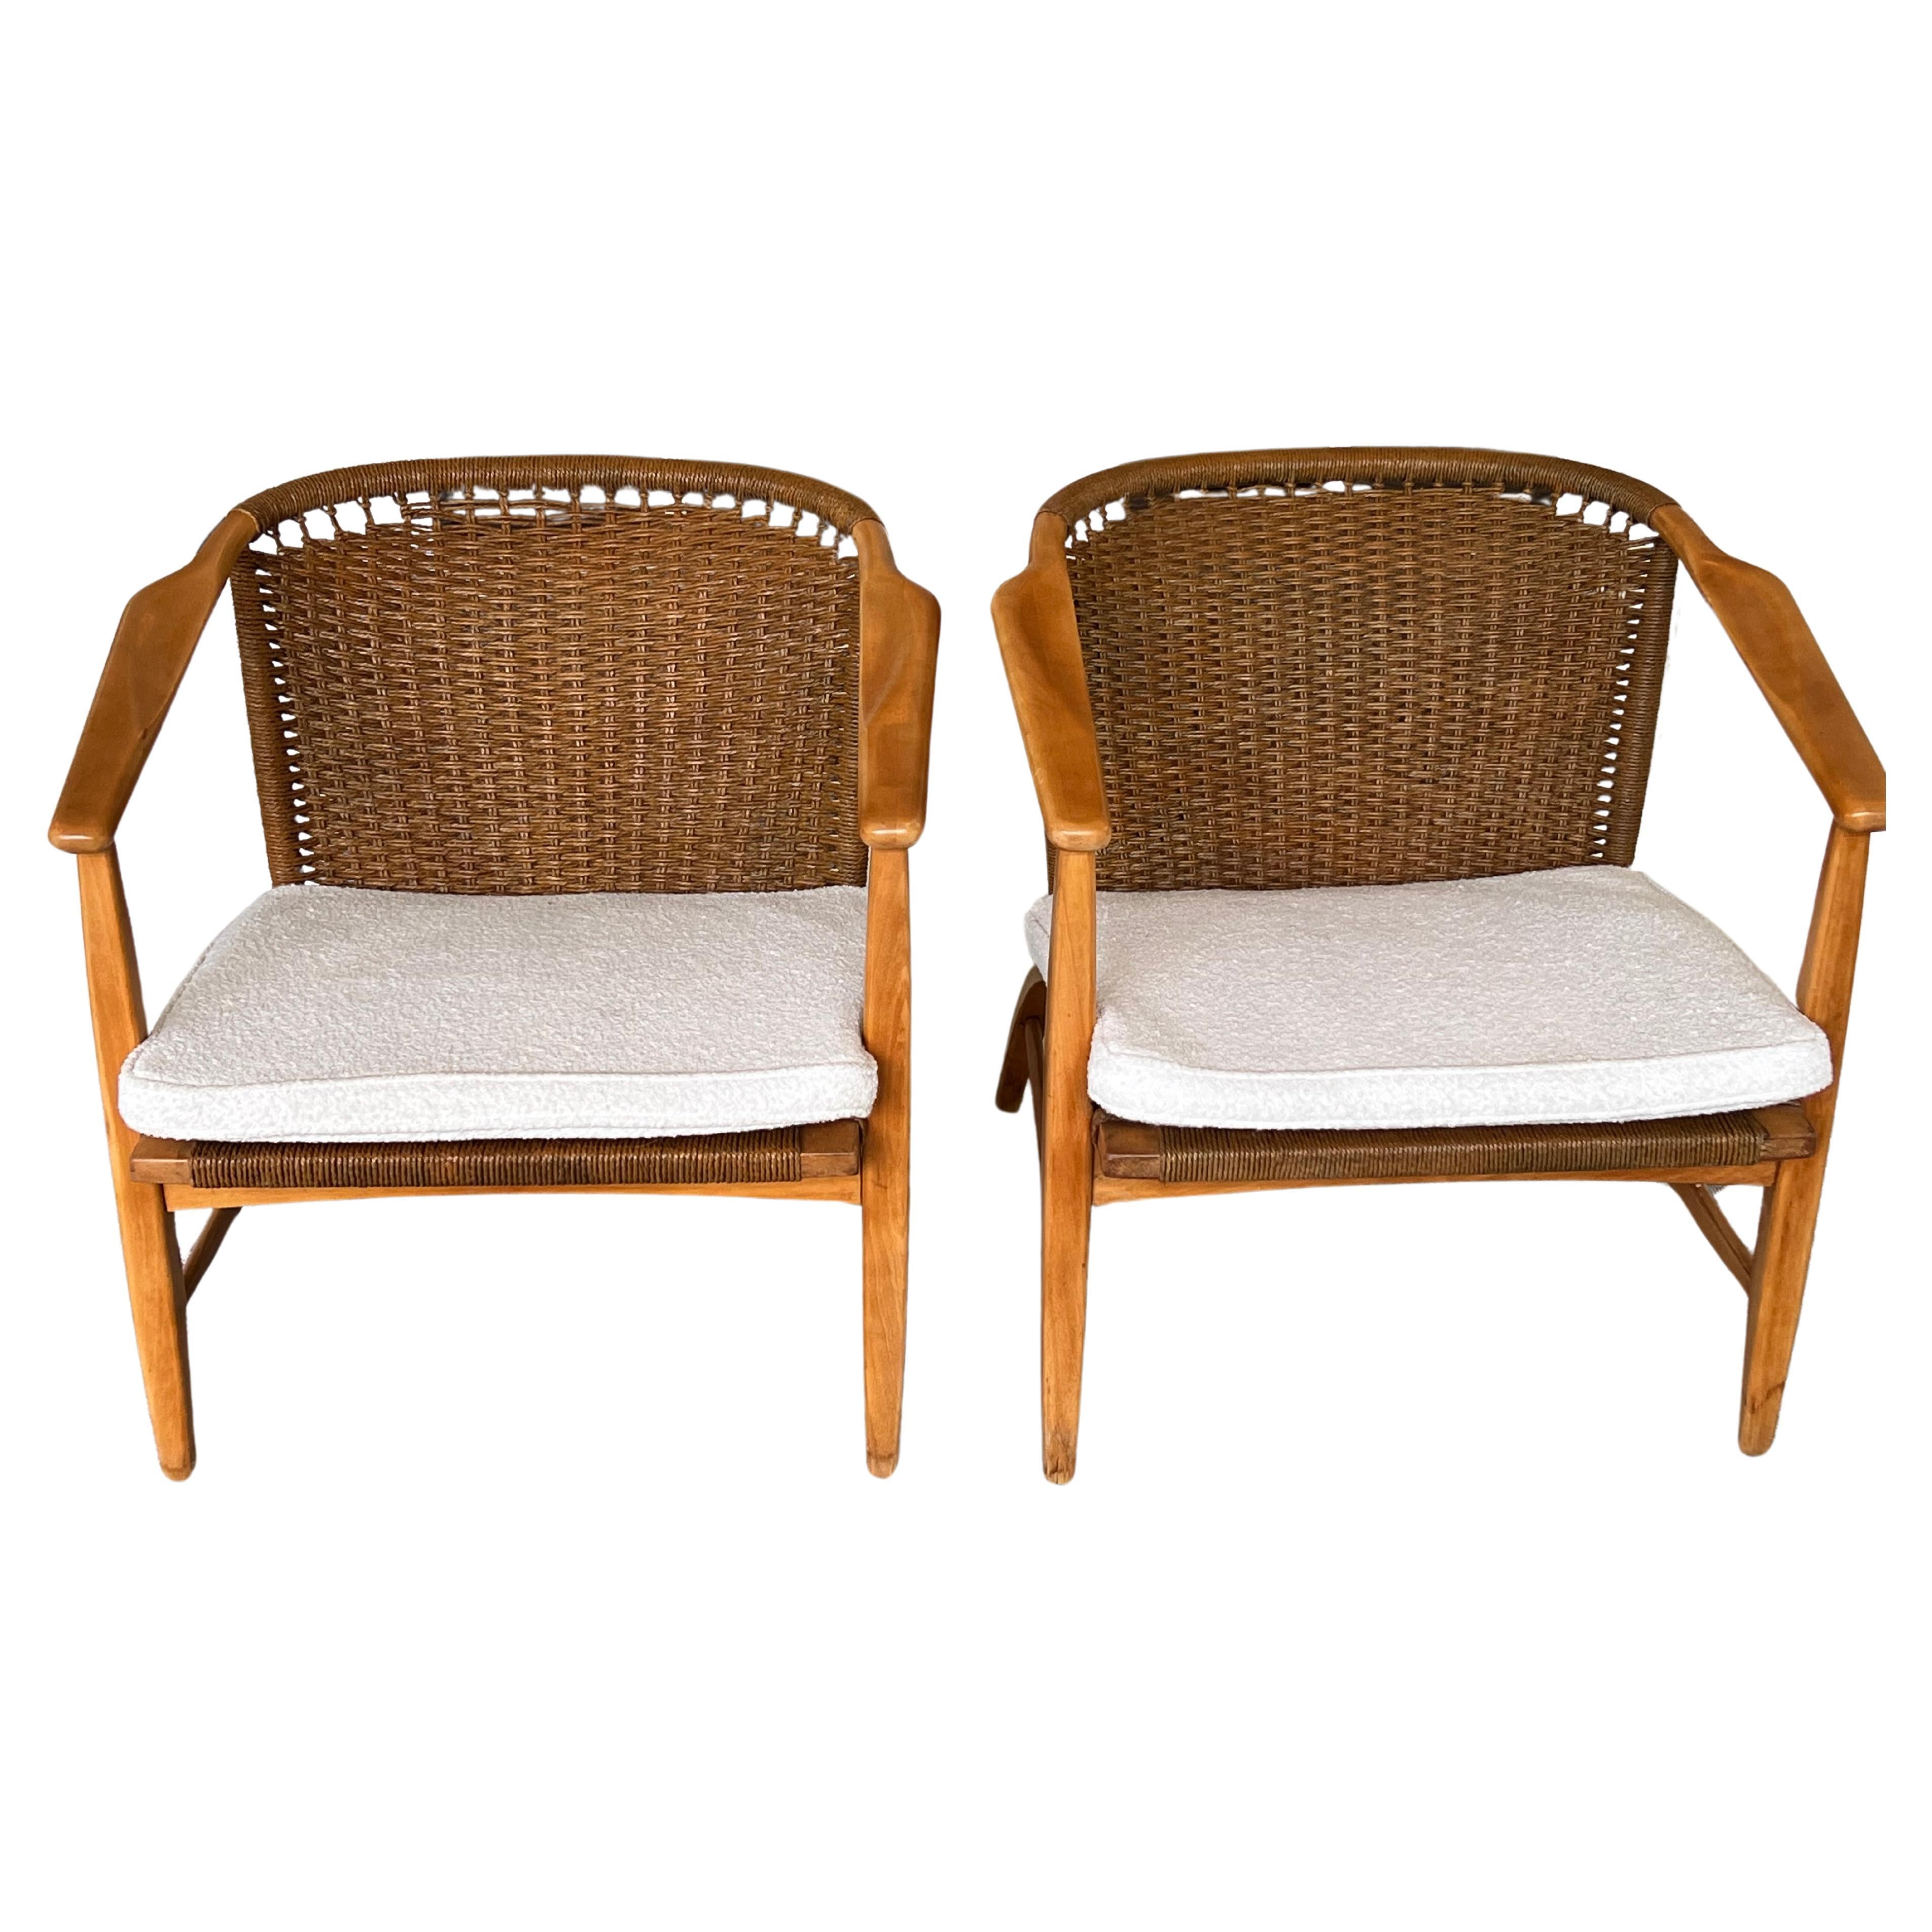 Pair of 1950's Danish Modern Lounge Chairs - Attributed to Wegner 